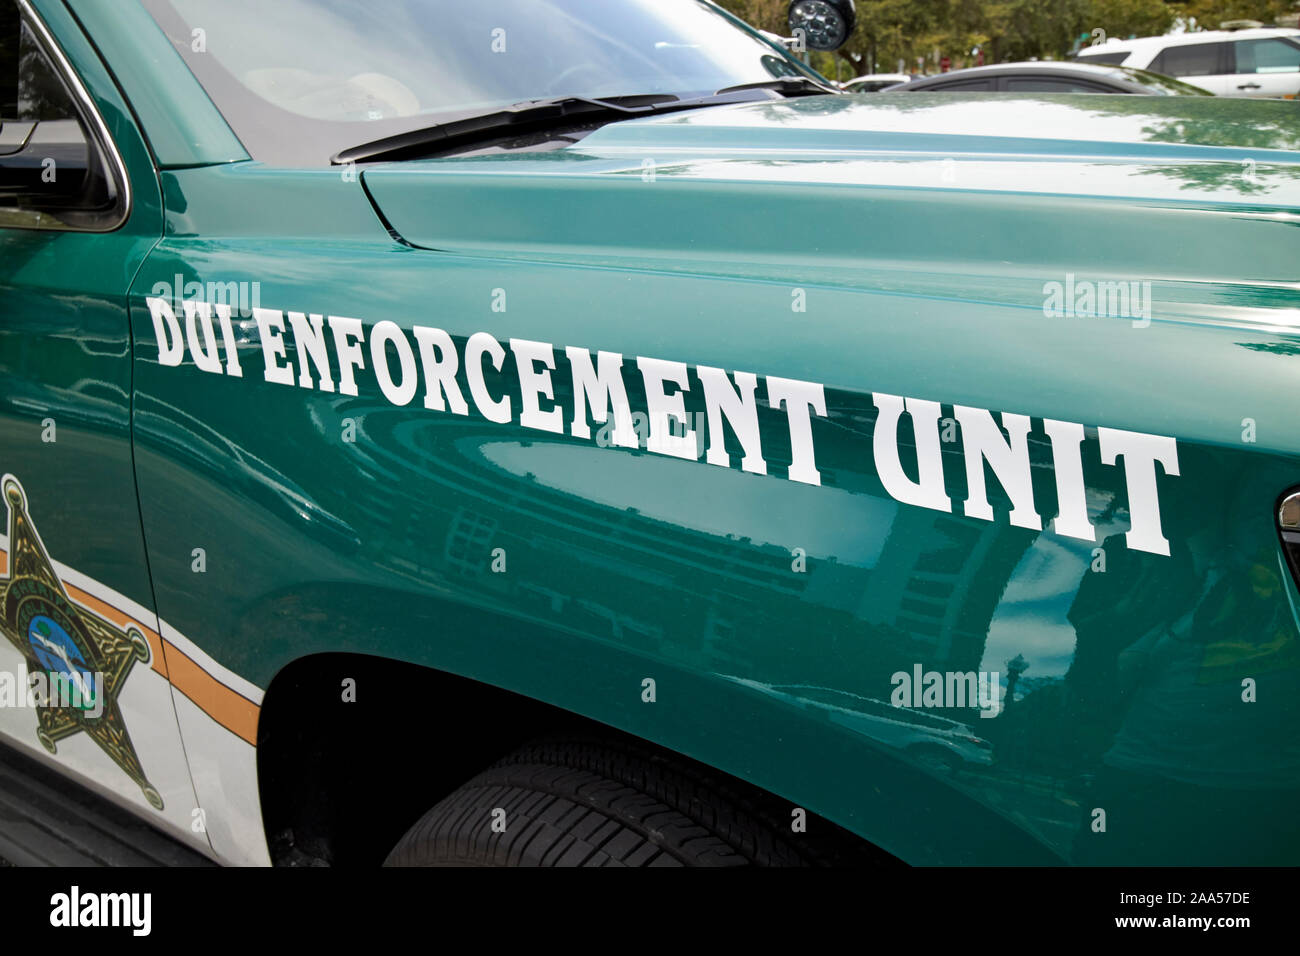 El departamento del sheriff del condado de Osceola Ford Explorer policía patrulla de la unidad de ejecución de dui vehículo SUV florida usa Foto de stock